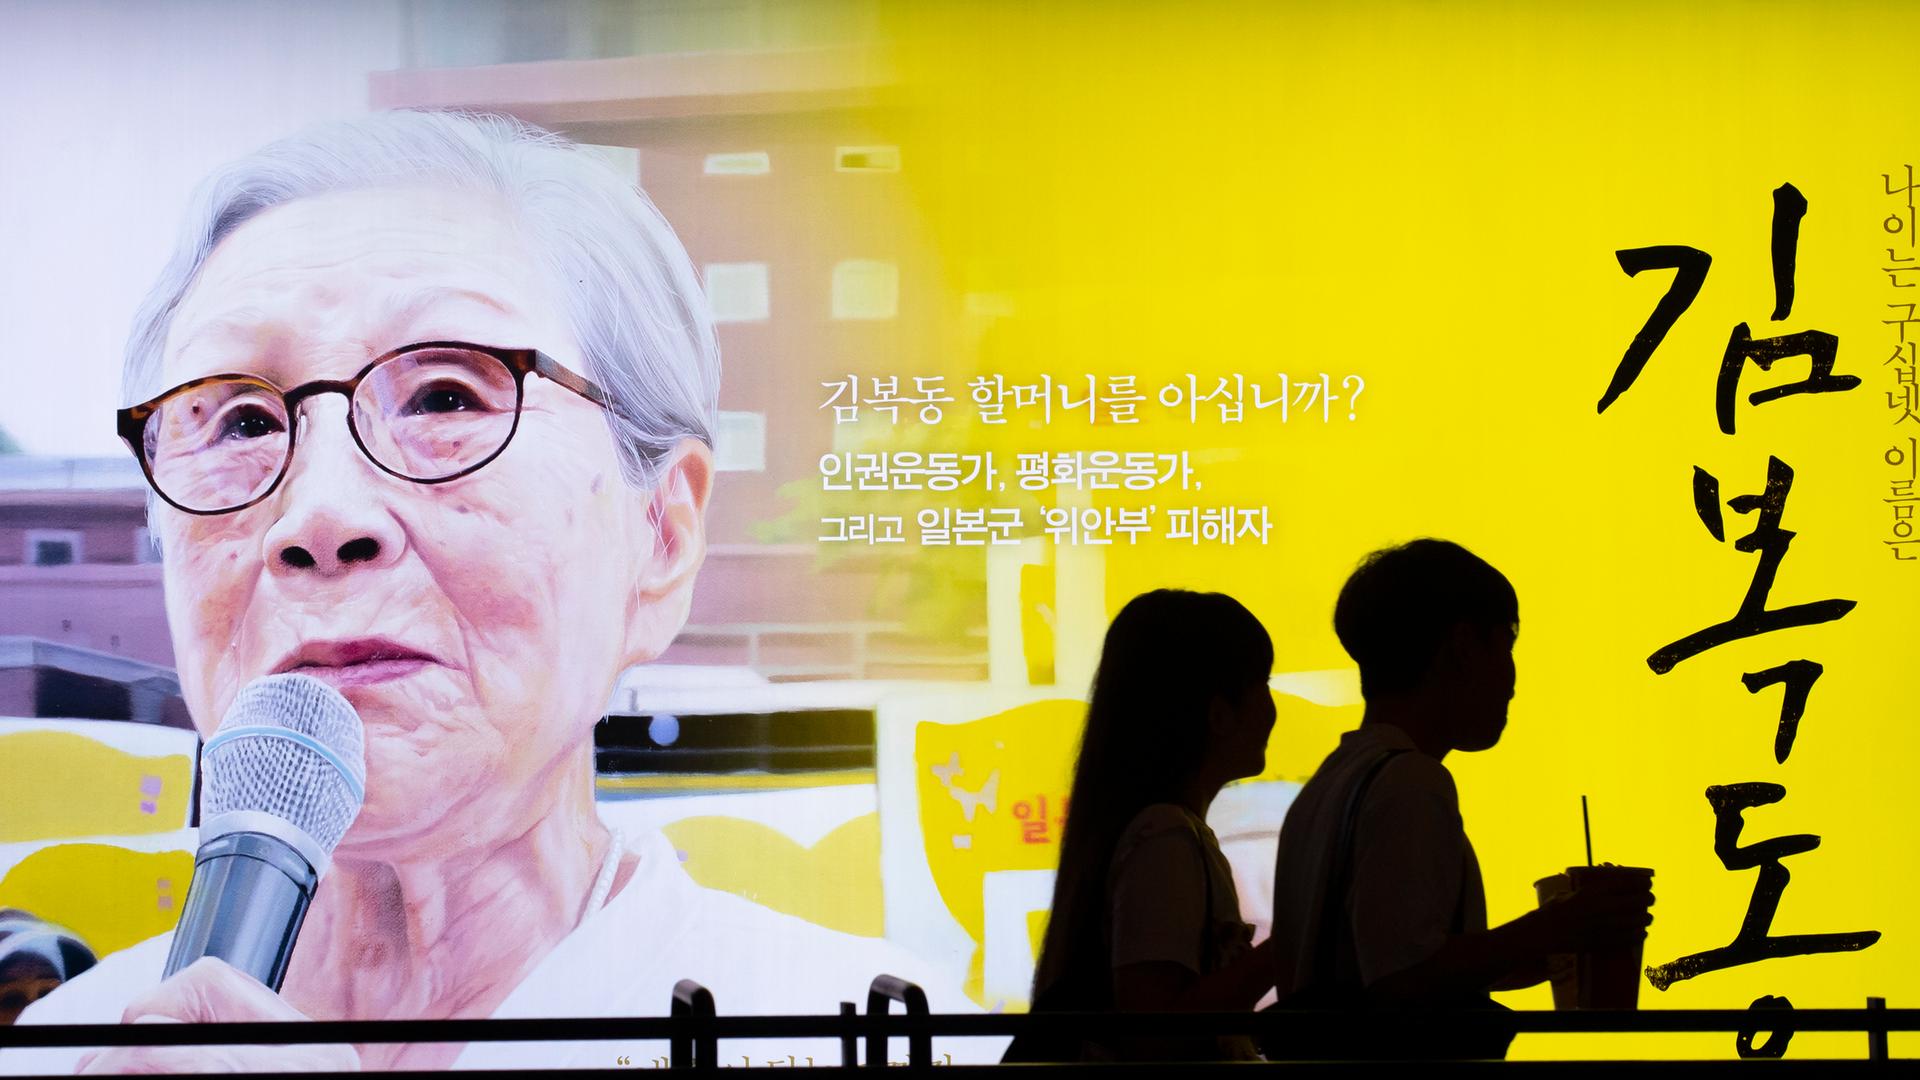 Ein Poster zeigt das Gesicht von Kim Bok-dong und wirbt für einen Dokumentarfilm. 